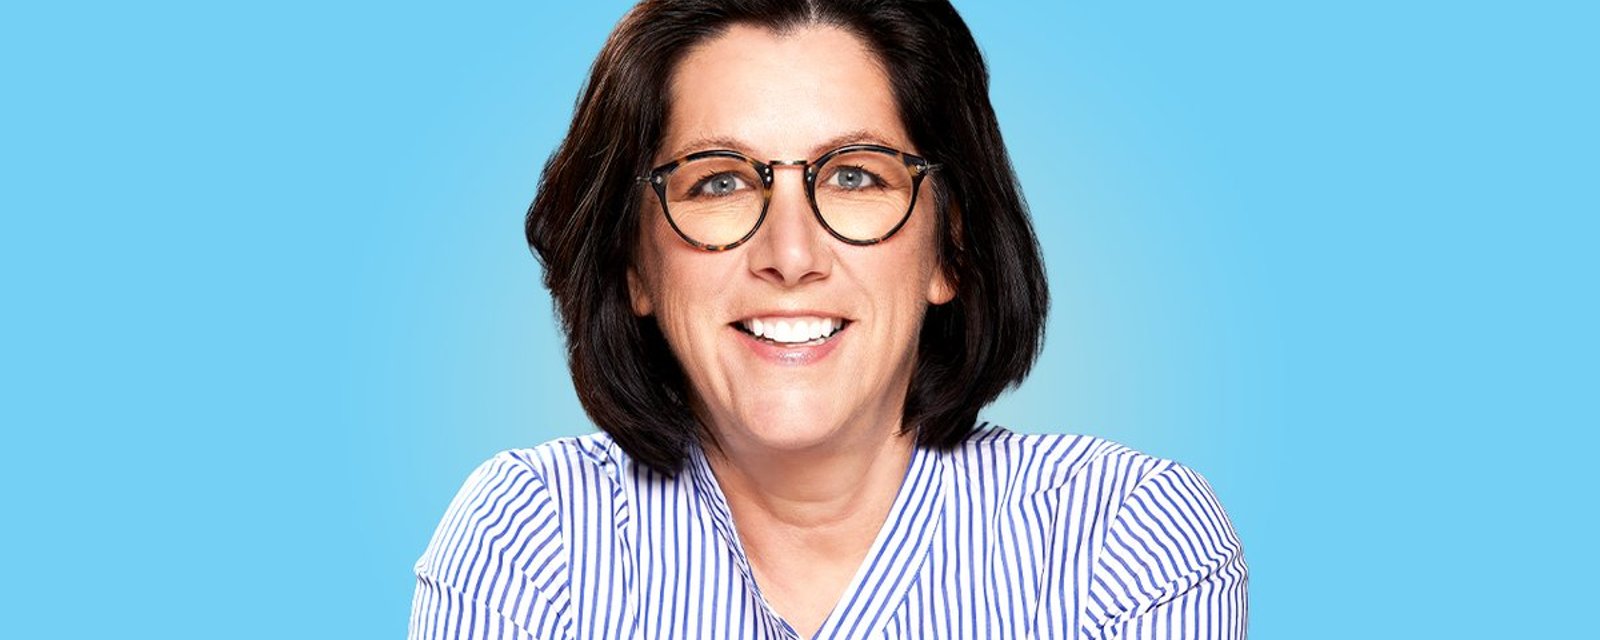 Danièle Sauvageau, une candidate en OR